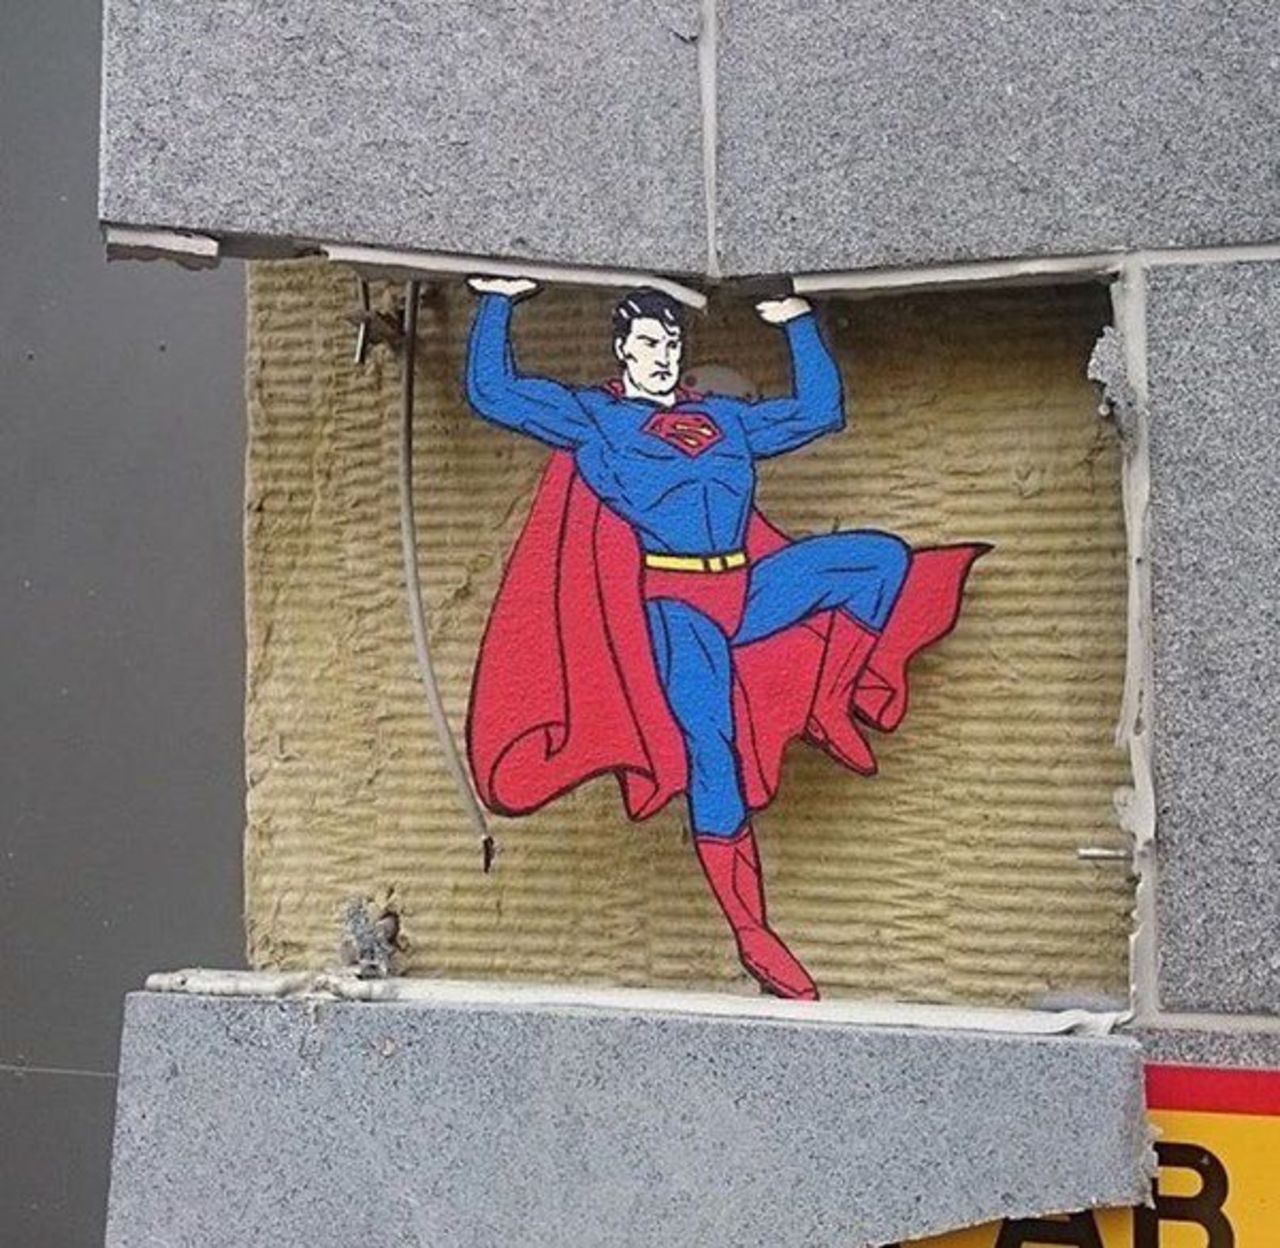 Clever. Idk the artist.#streetart #mural #graffiti #inktober #comics https://t.co/qblI7pdjpq